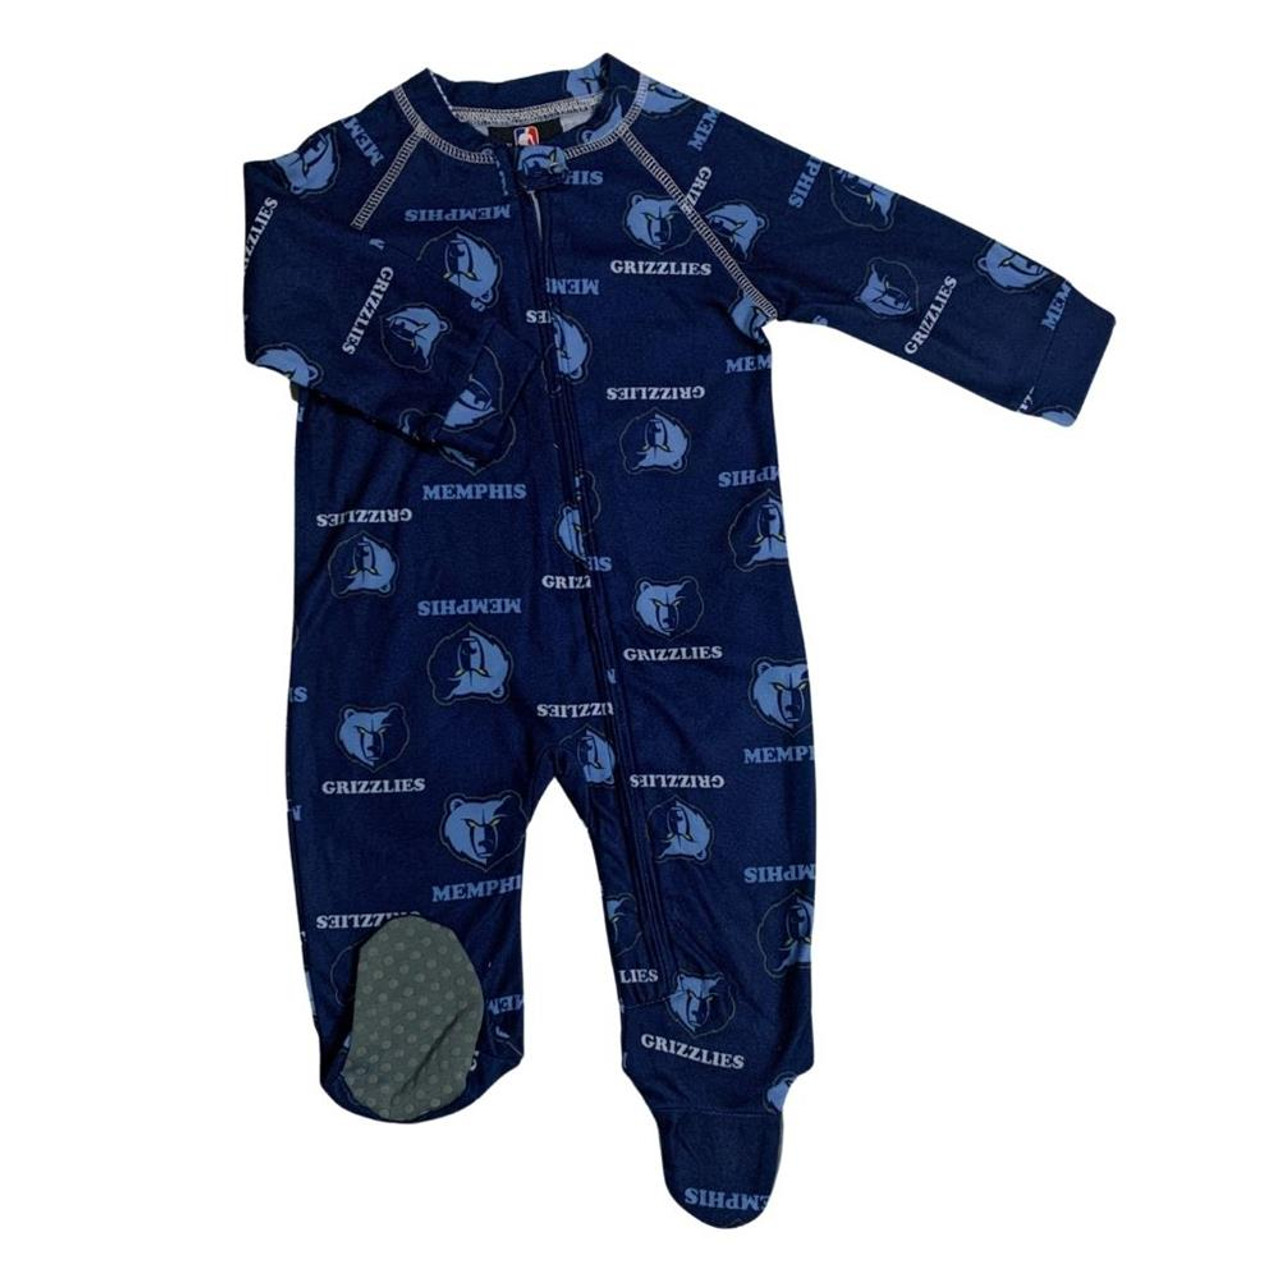 memphis grizzlies infant jersey